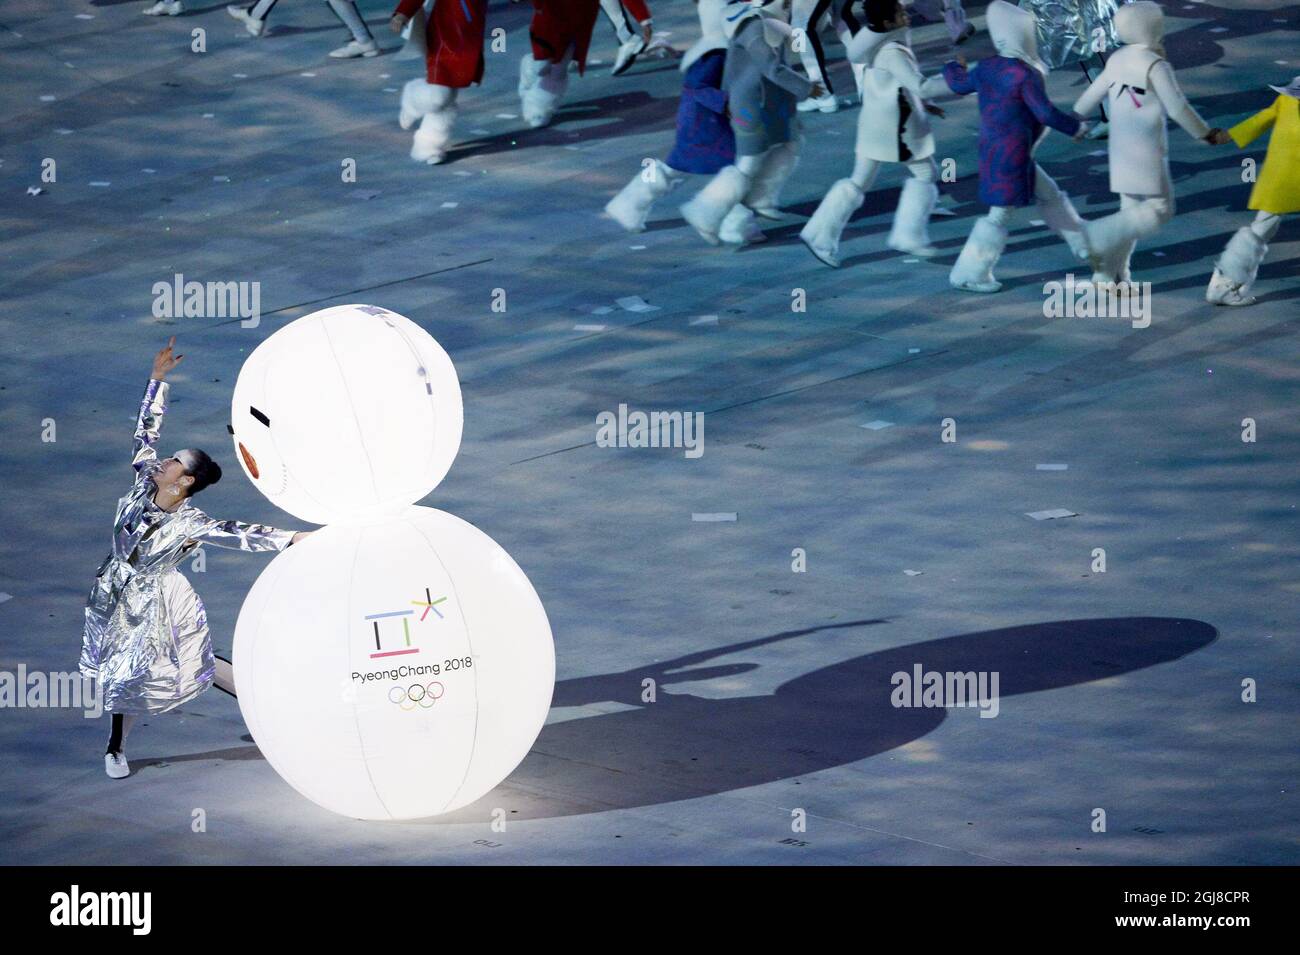 SOTSCHI 2014-02-23 Südkorea präsentiert die nächsten Olympischen Winterspiele 2018 während der Abschlusszeremonie für die Olympischen Winterspiele 2014 in Sotschi am 22. Februar 2014. Foto: Tobias RÃƒÂ¶stlund / TT / kod 1014 *** Bilder ingÃƒÂ¥r i SPORTPAKET. FÃƒÂ¶r ÃƒÂ¶vriga BETALBILD *** Stockfoto